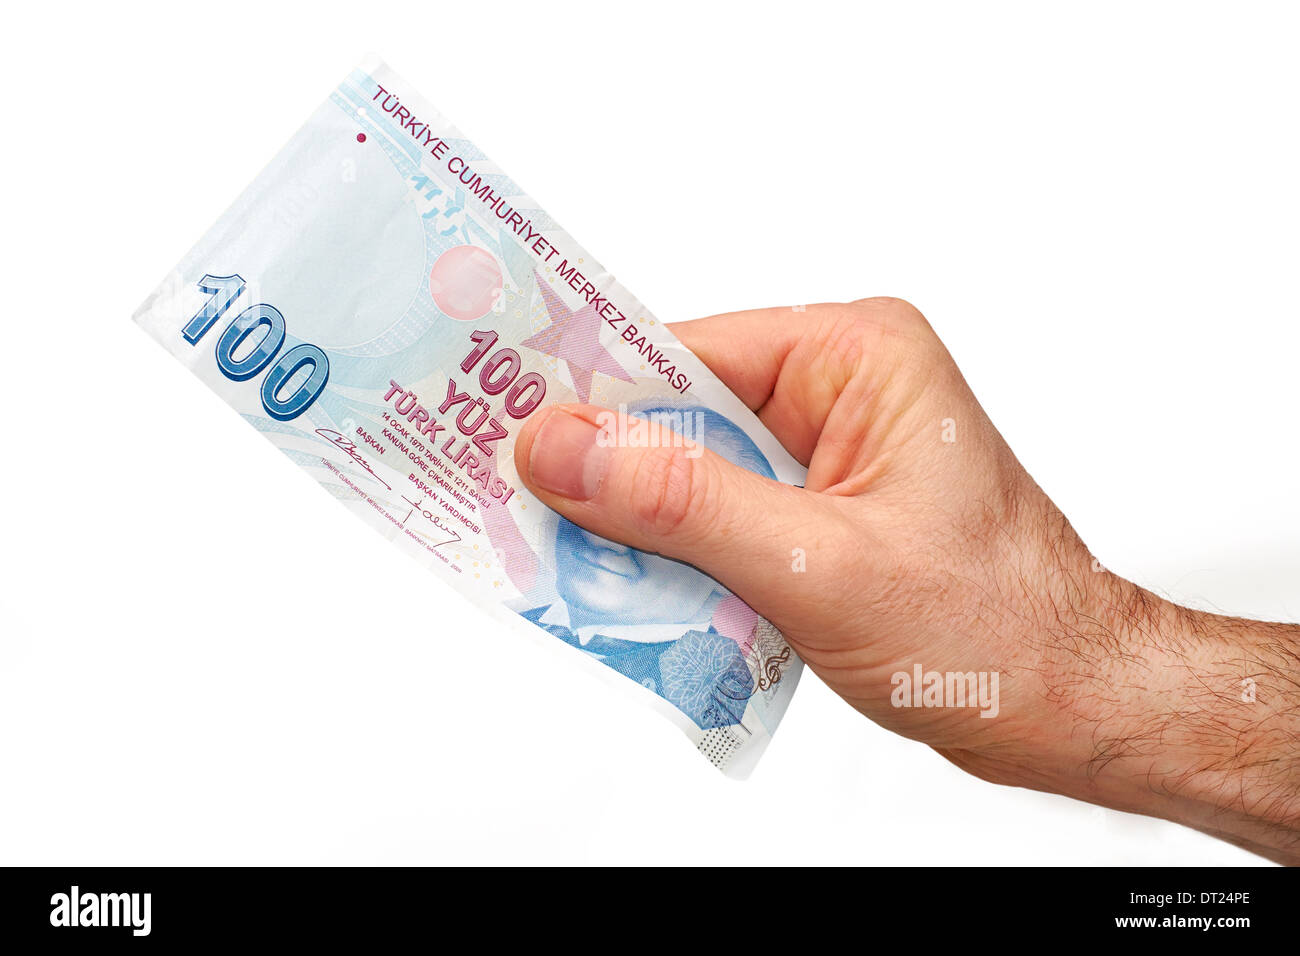 Une main tenant un livre 100 turc remarque, sur un fond blanc. Banque D'Images